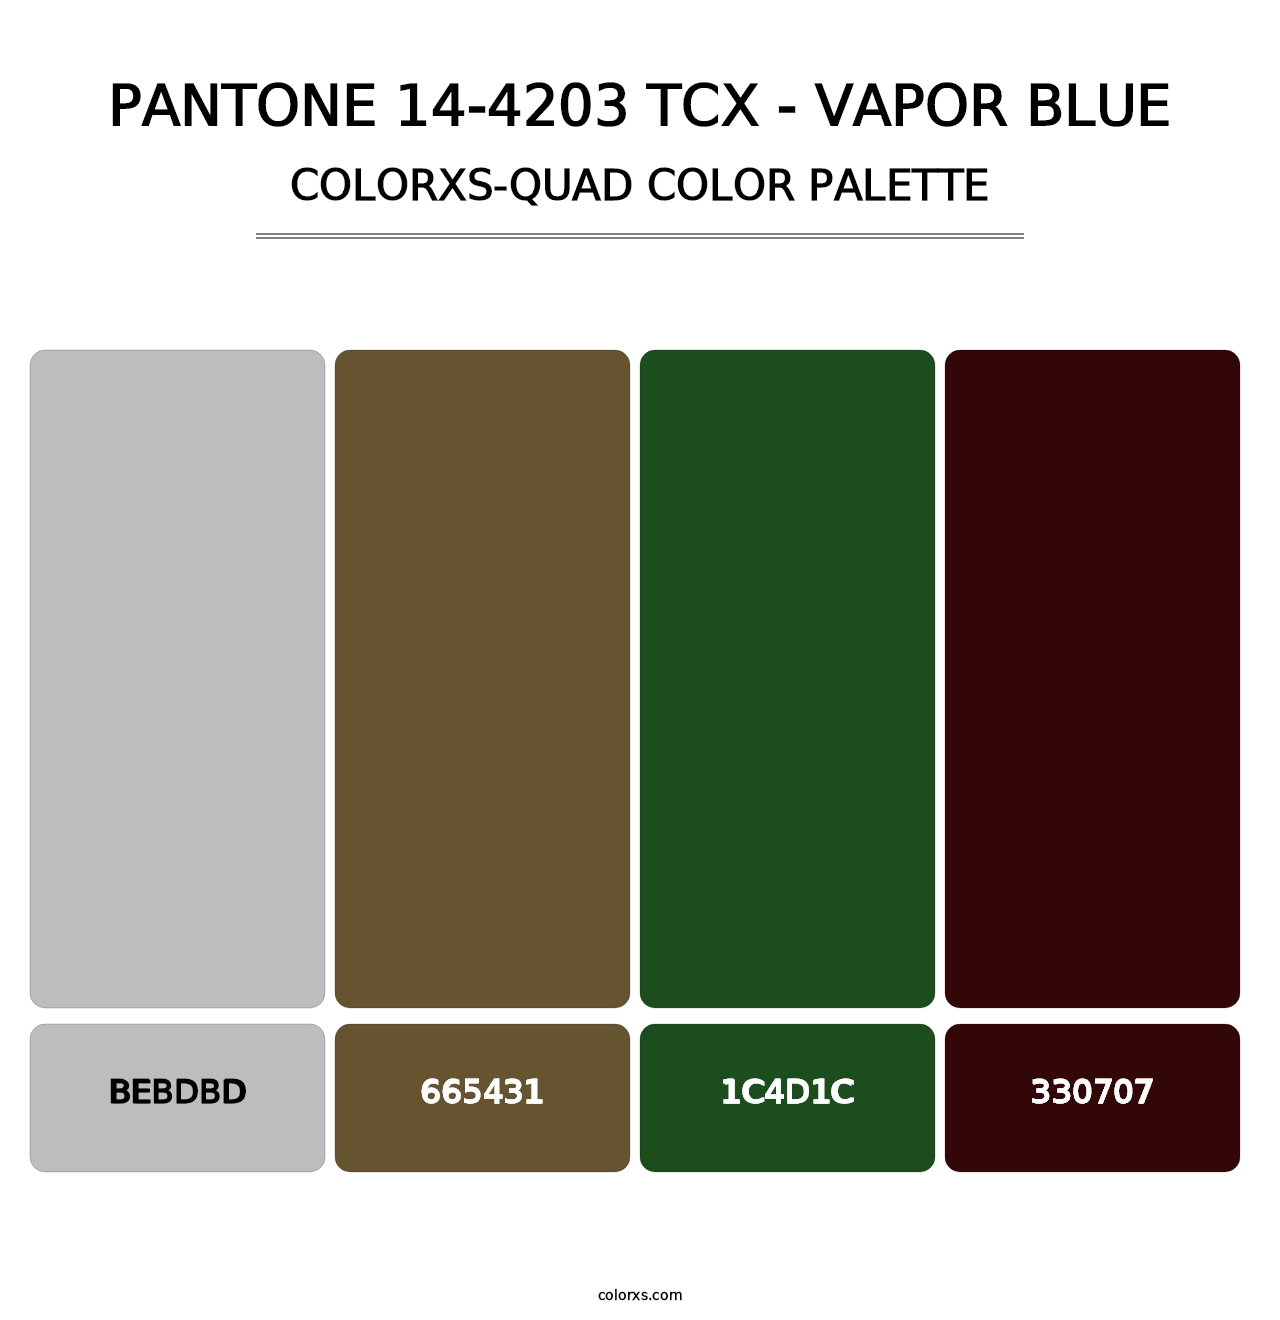 PANTONE 14-4203 TCX - Vapor Blue - Colorxs Quad Palette